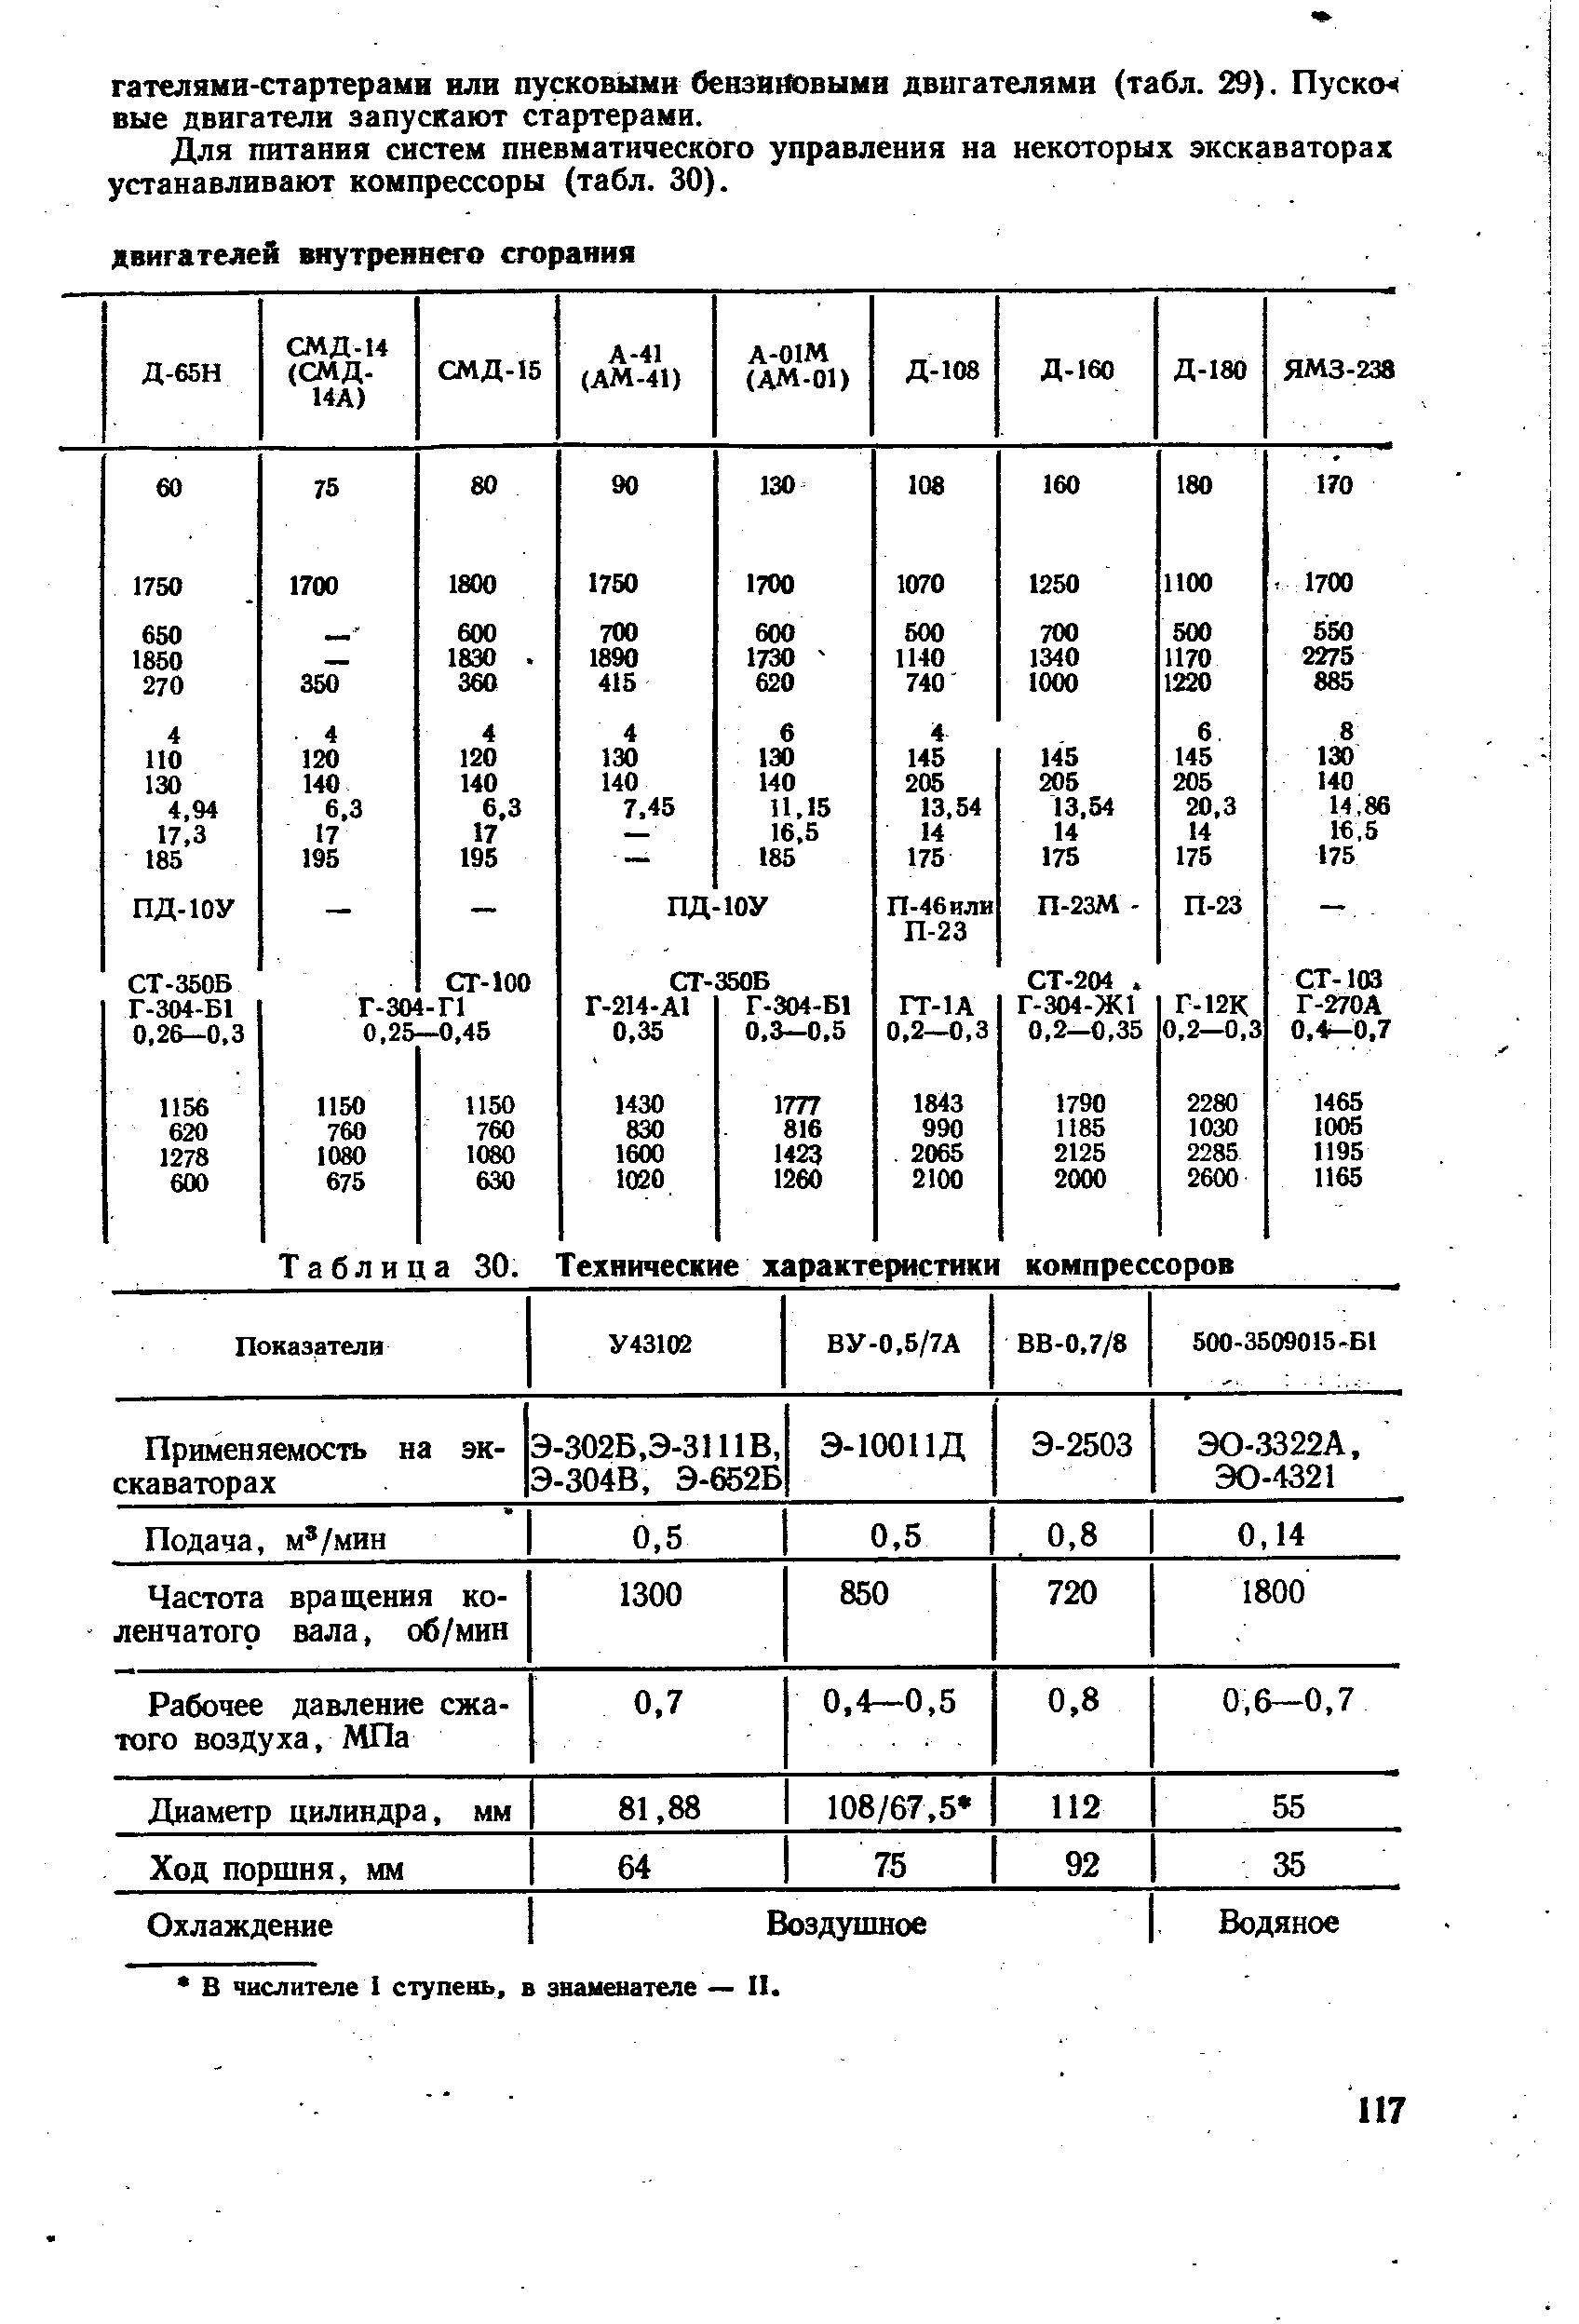 Таблица 30. Технические характеристики компрессоров
